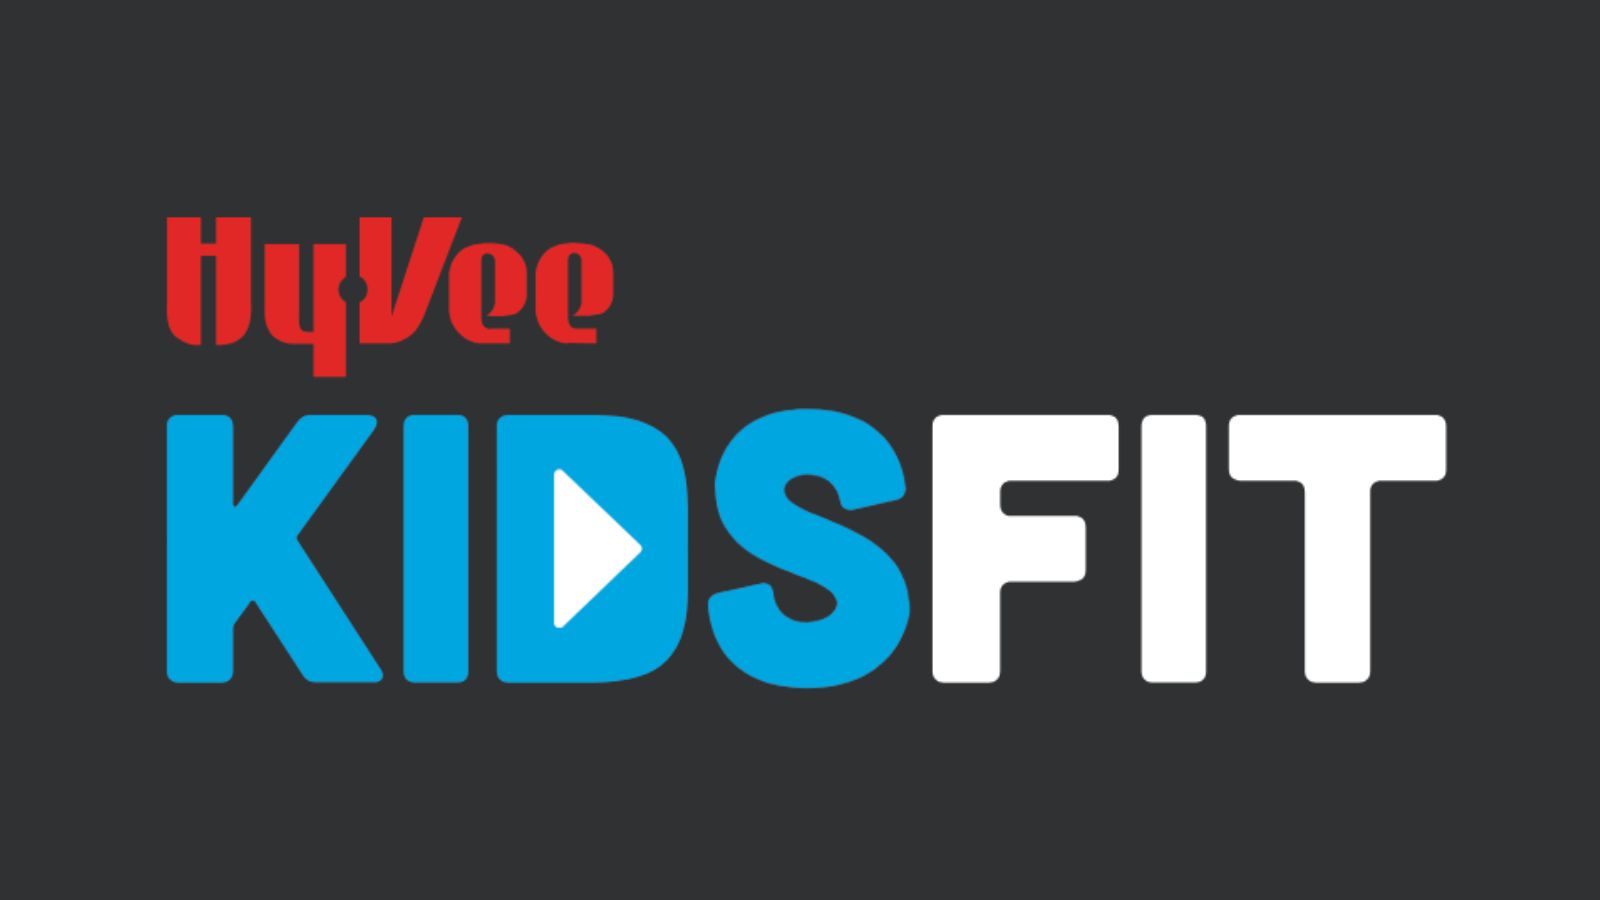 KidsFit Youth Health Program — Hy-Vee KidsFit